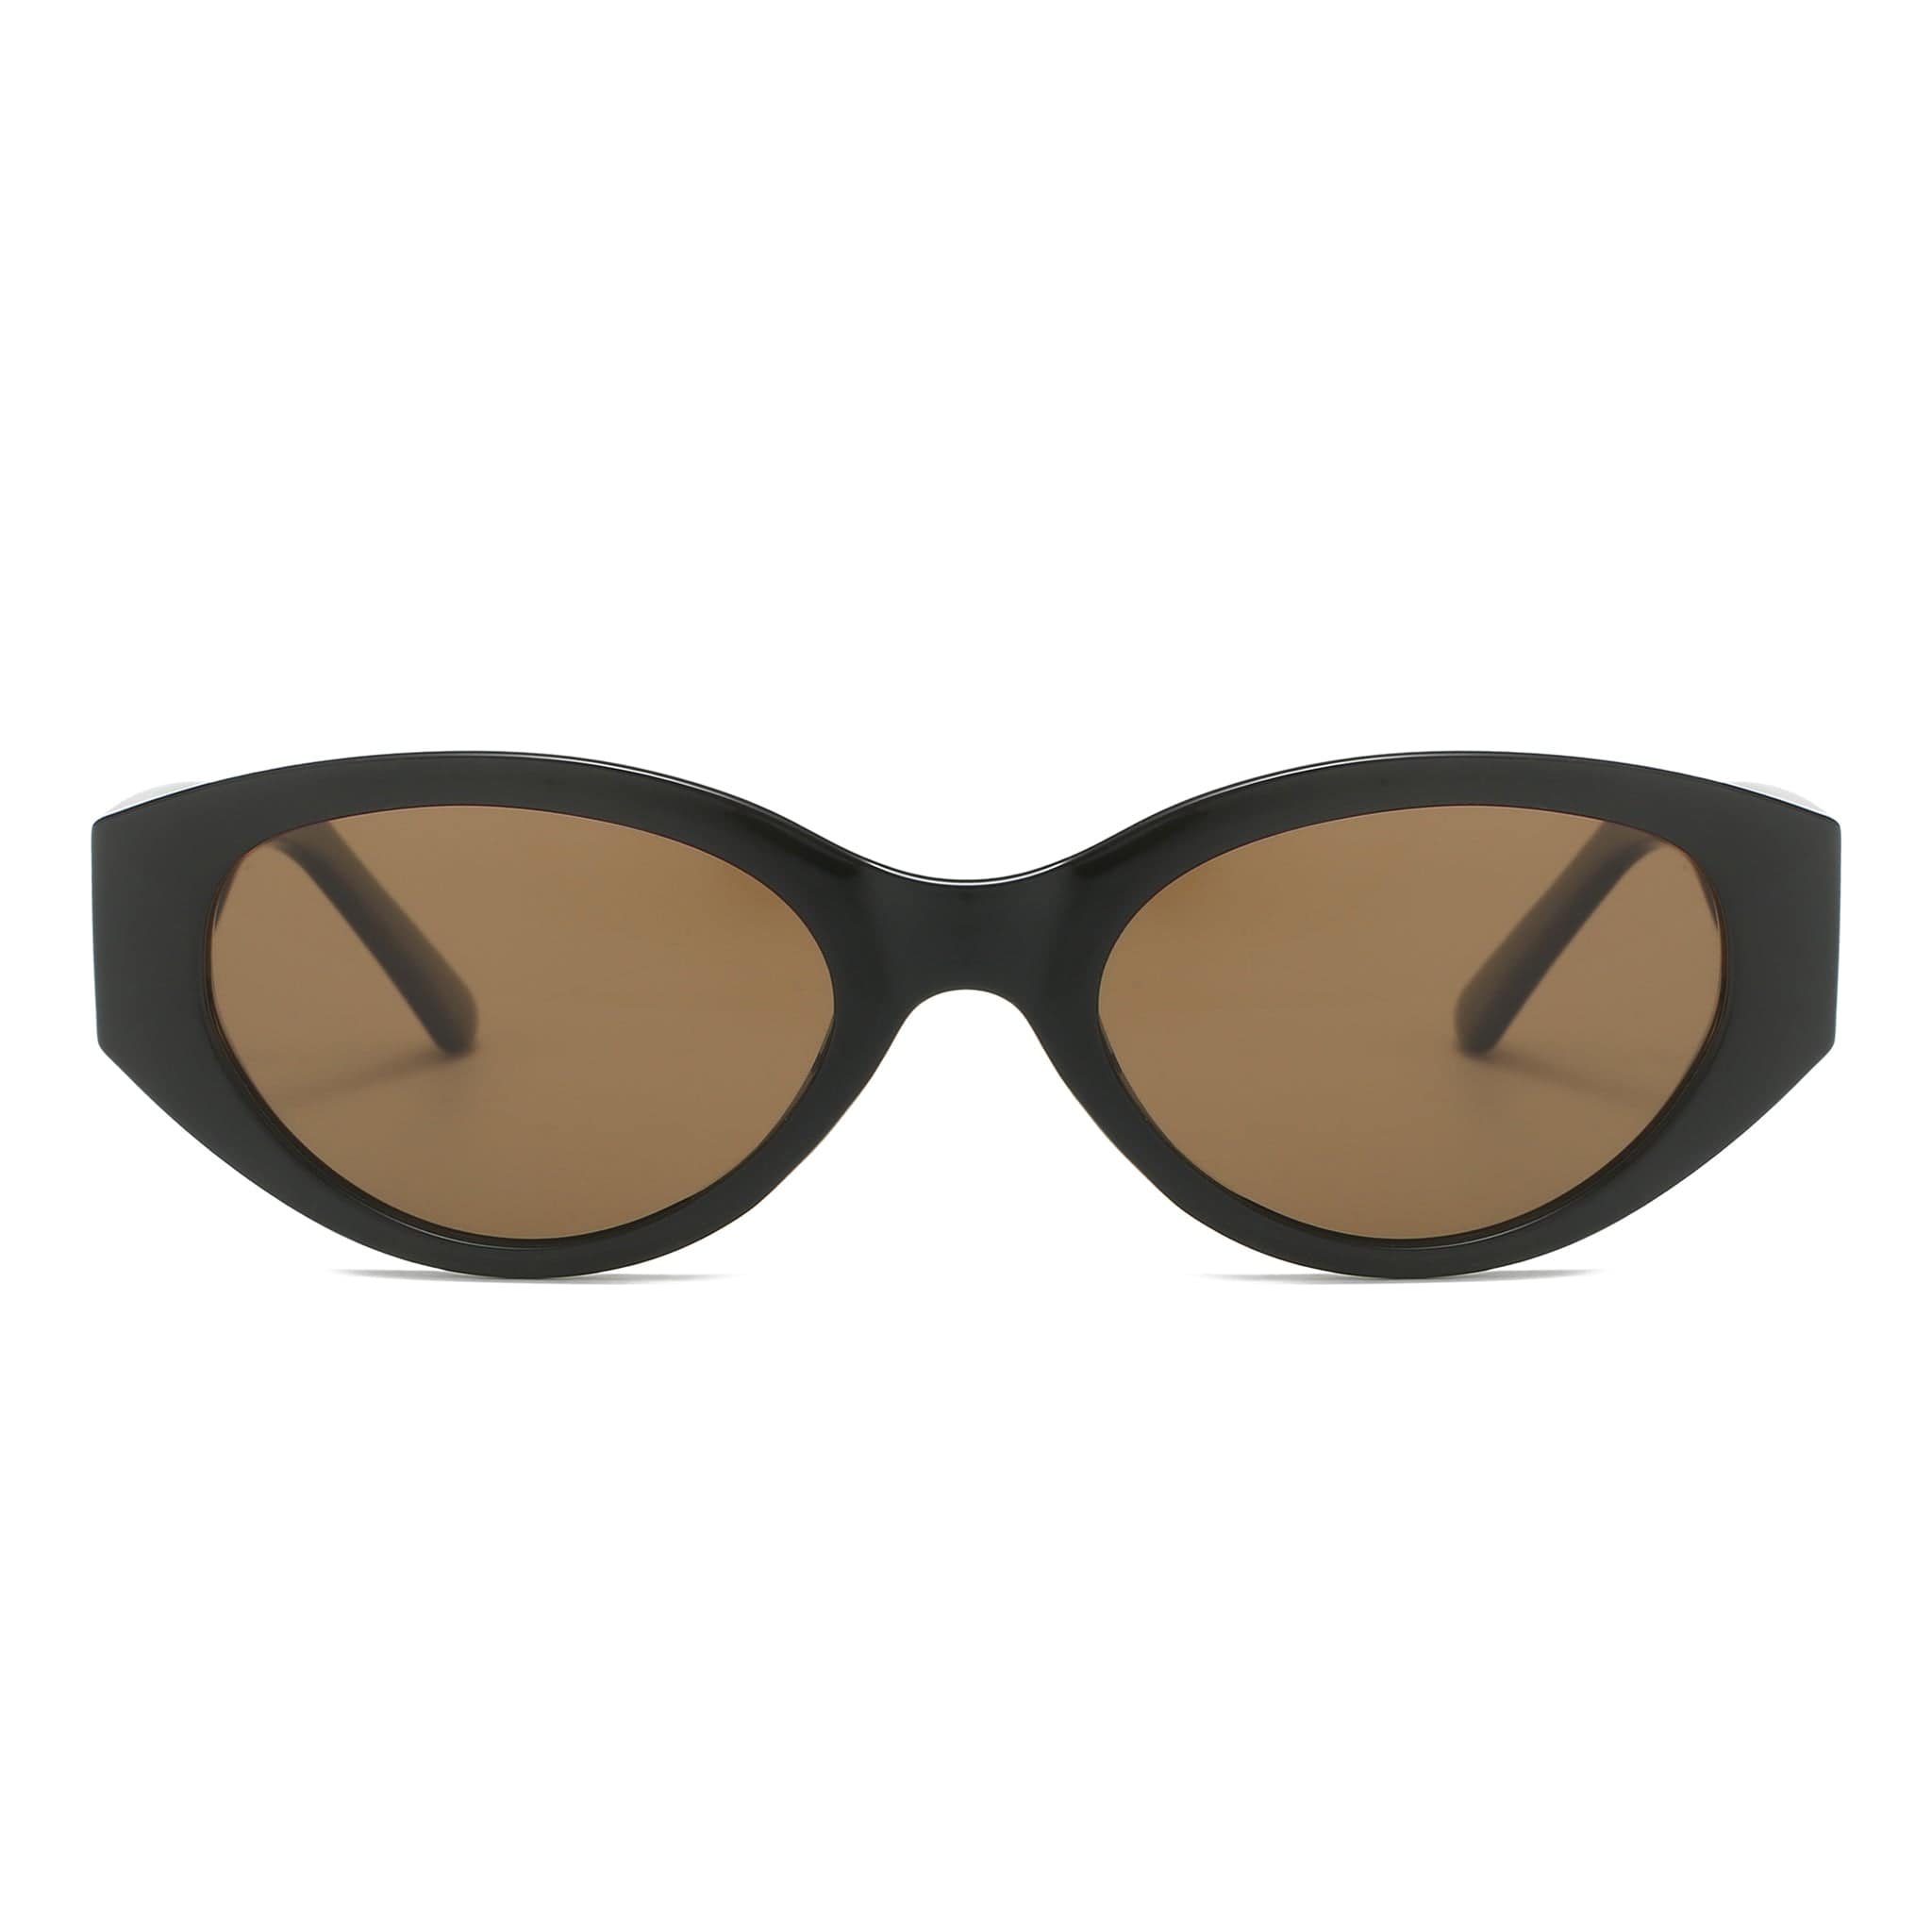 GIUSTIZIERI VECCHI Sunglasses Small / Pale Brown PoshPrincess Uno